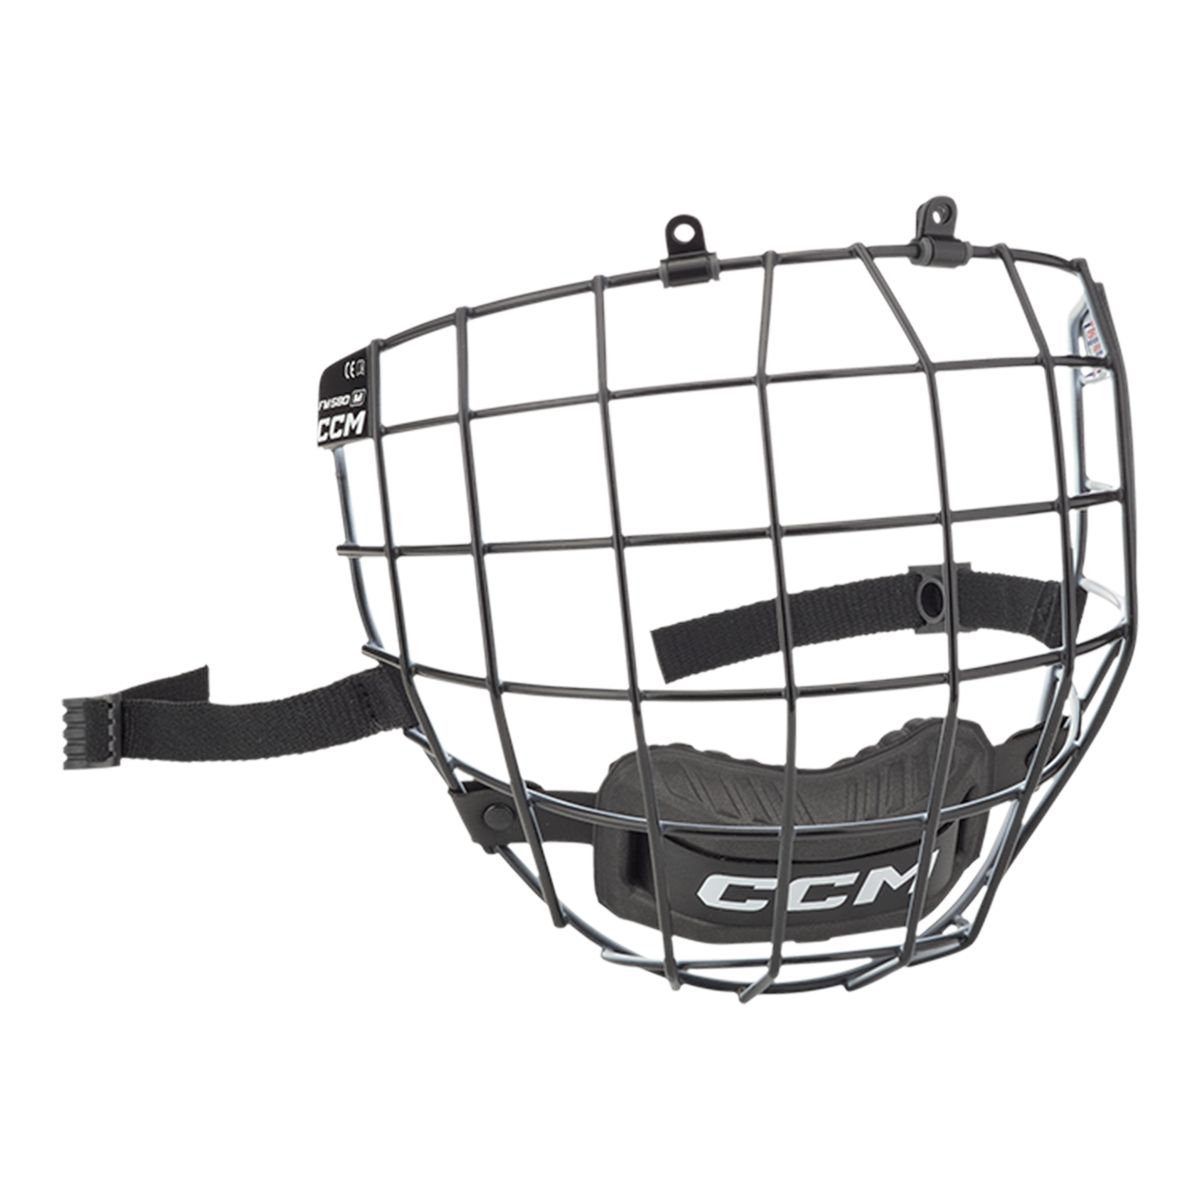 Image of CCM FM 580 Senior Helmet Cage